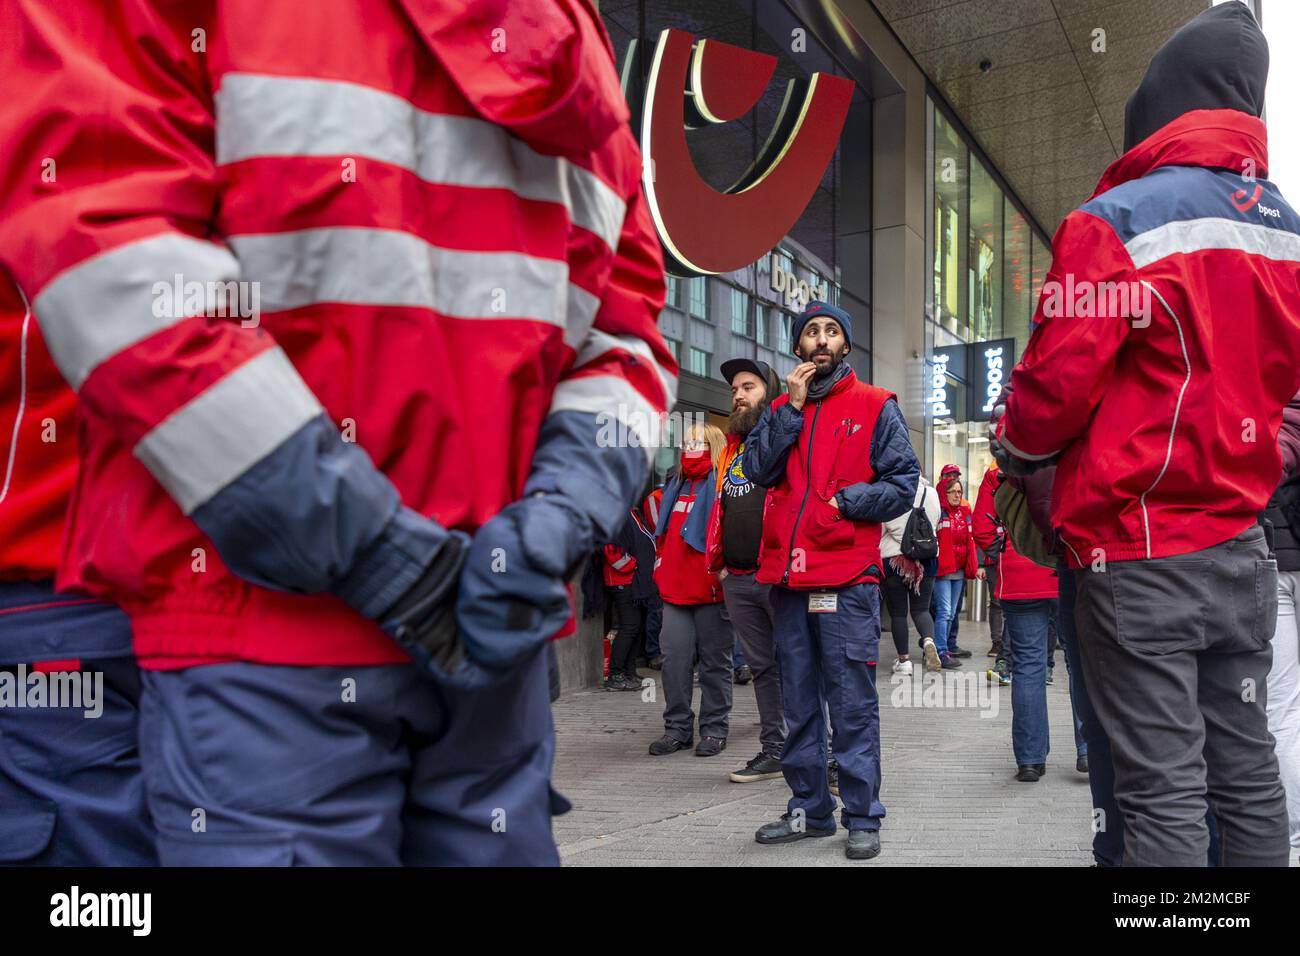 L'illustration montre une action des travailleurs postaux du service  national de poste belge Bpost, au bureau de poste de Bruxelles dans le  centre-ville de Bruxelles de Brouckere, lundi 19 novembre 2018. BELGA